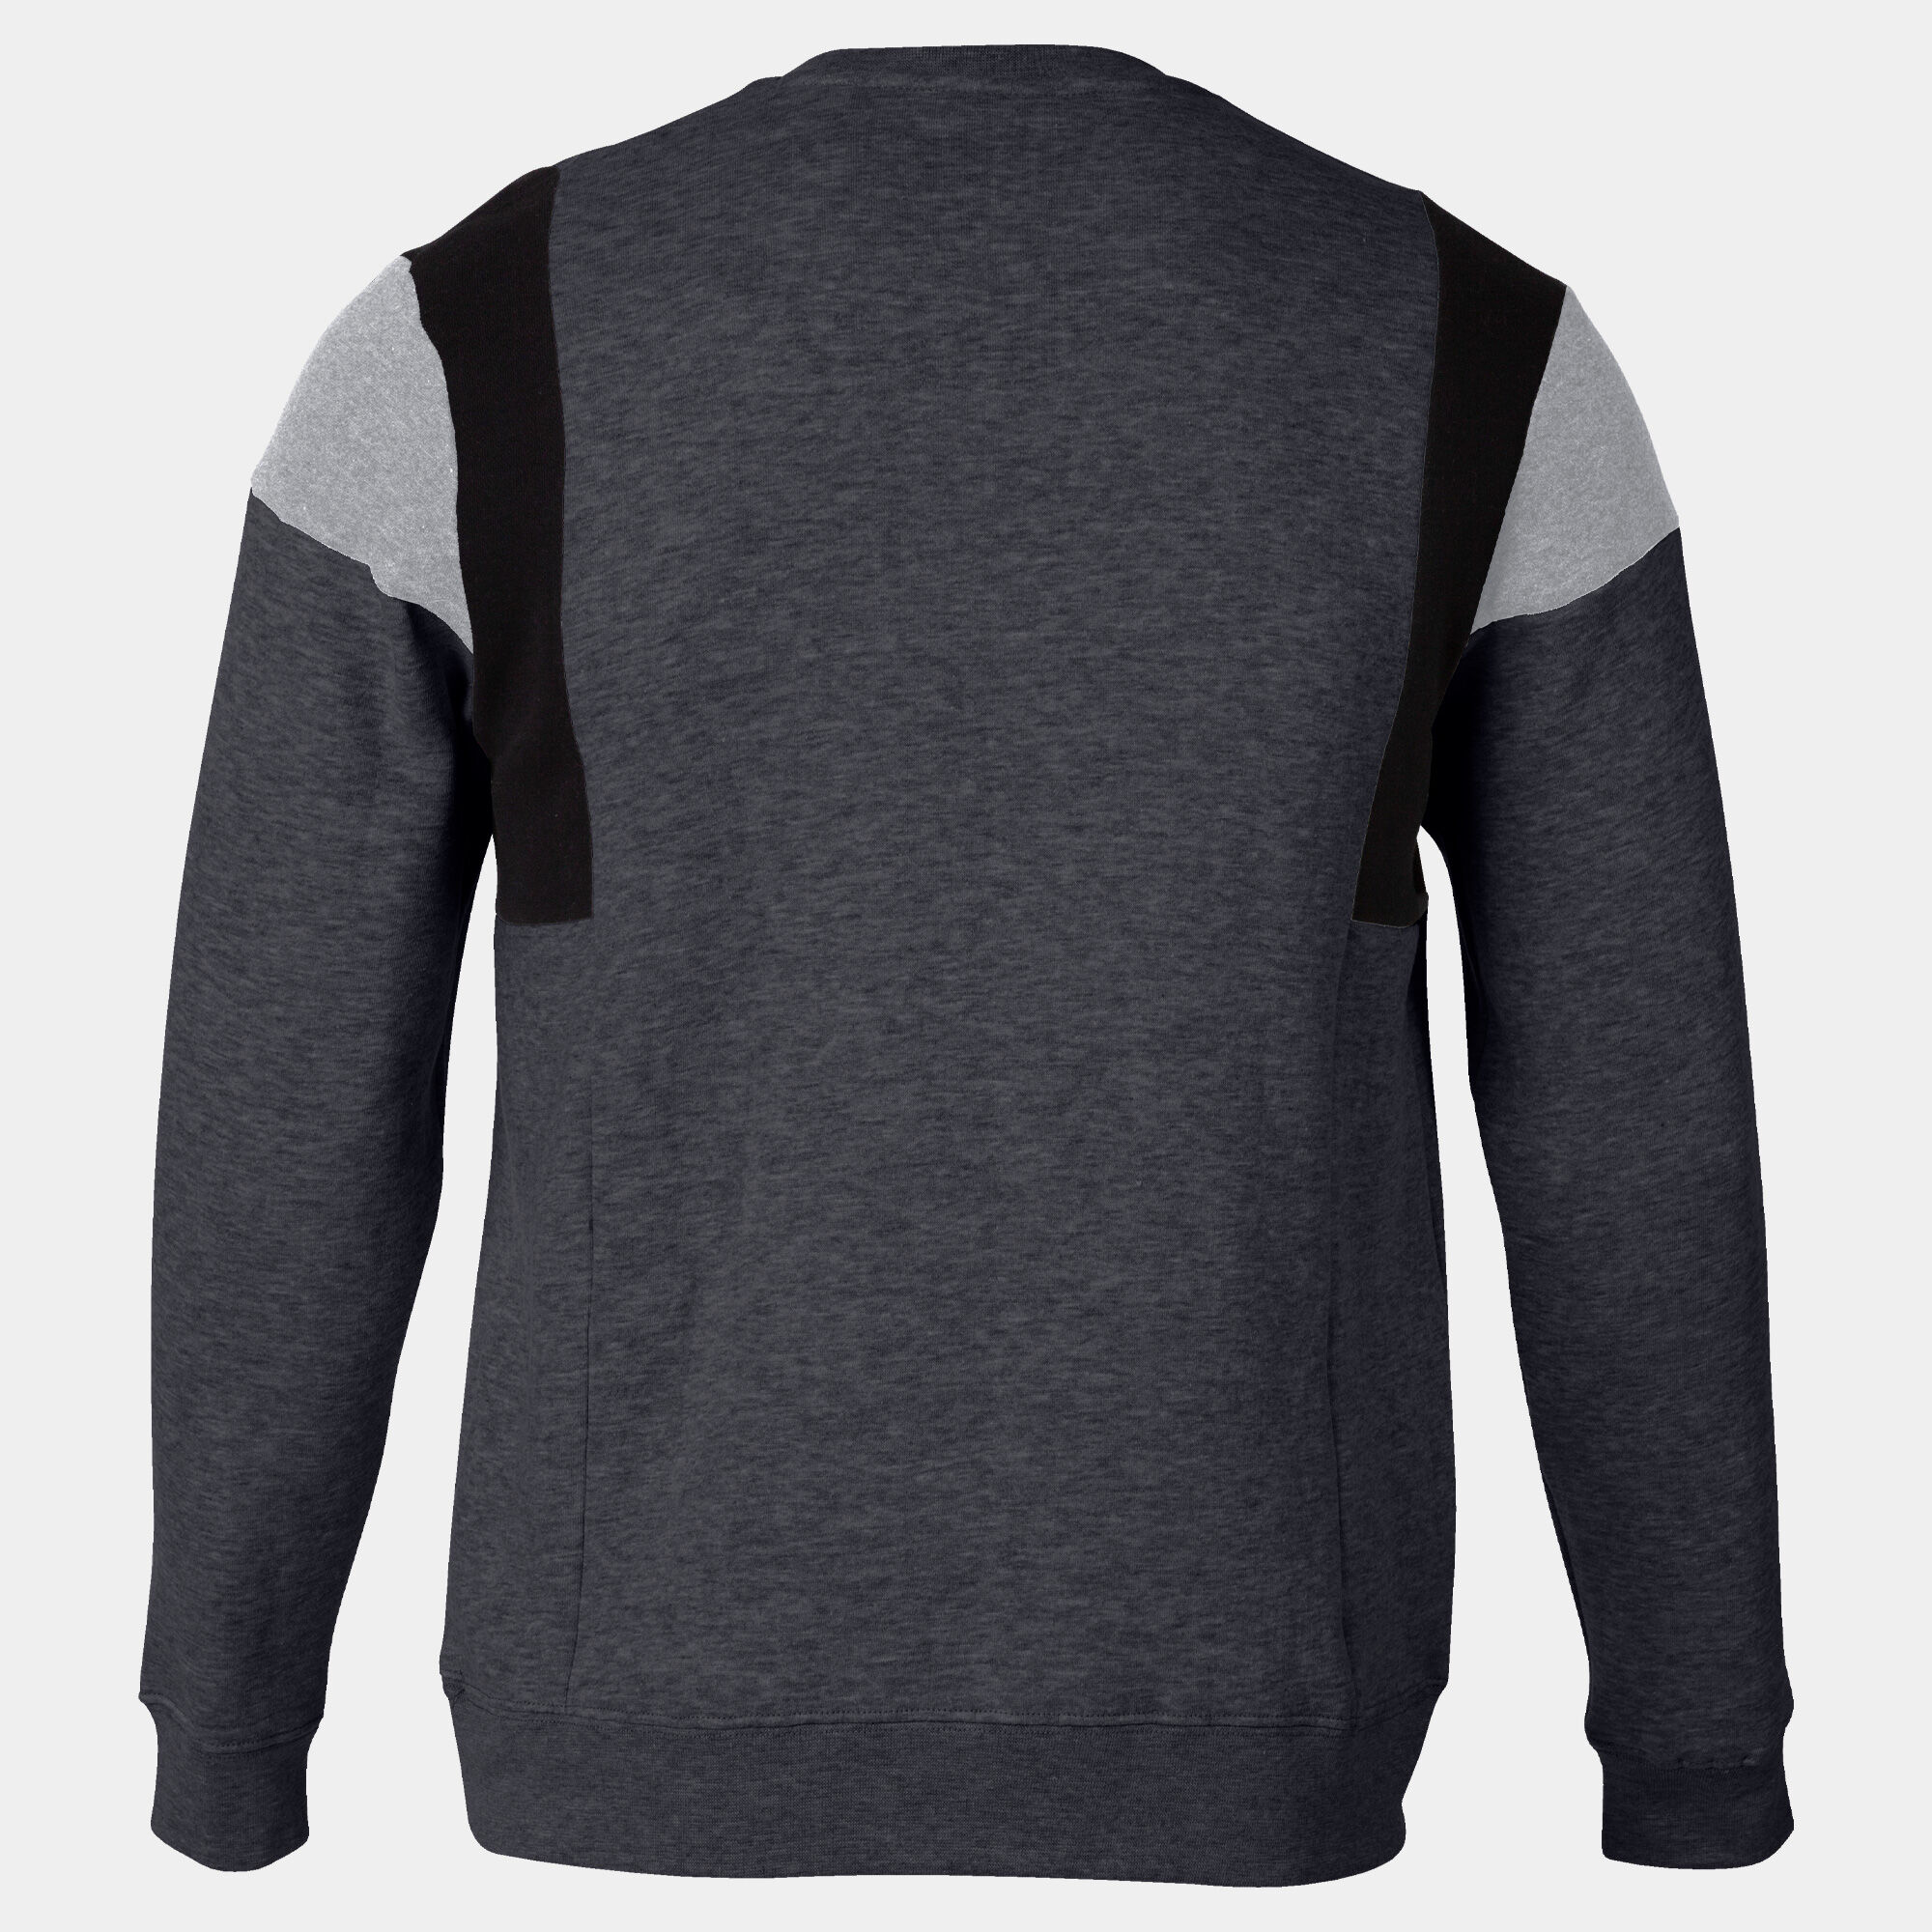 Sweat-shirt homme Confort III gris melange